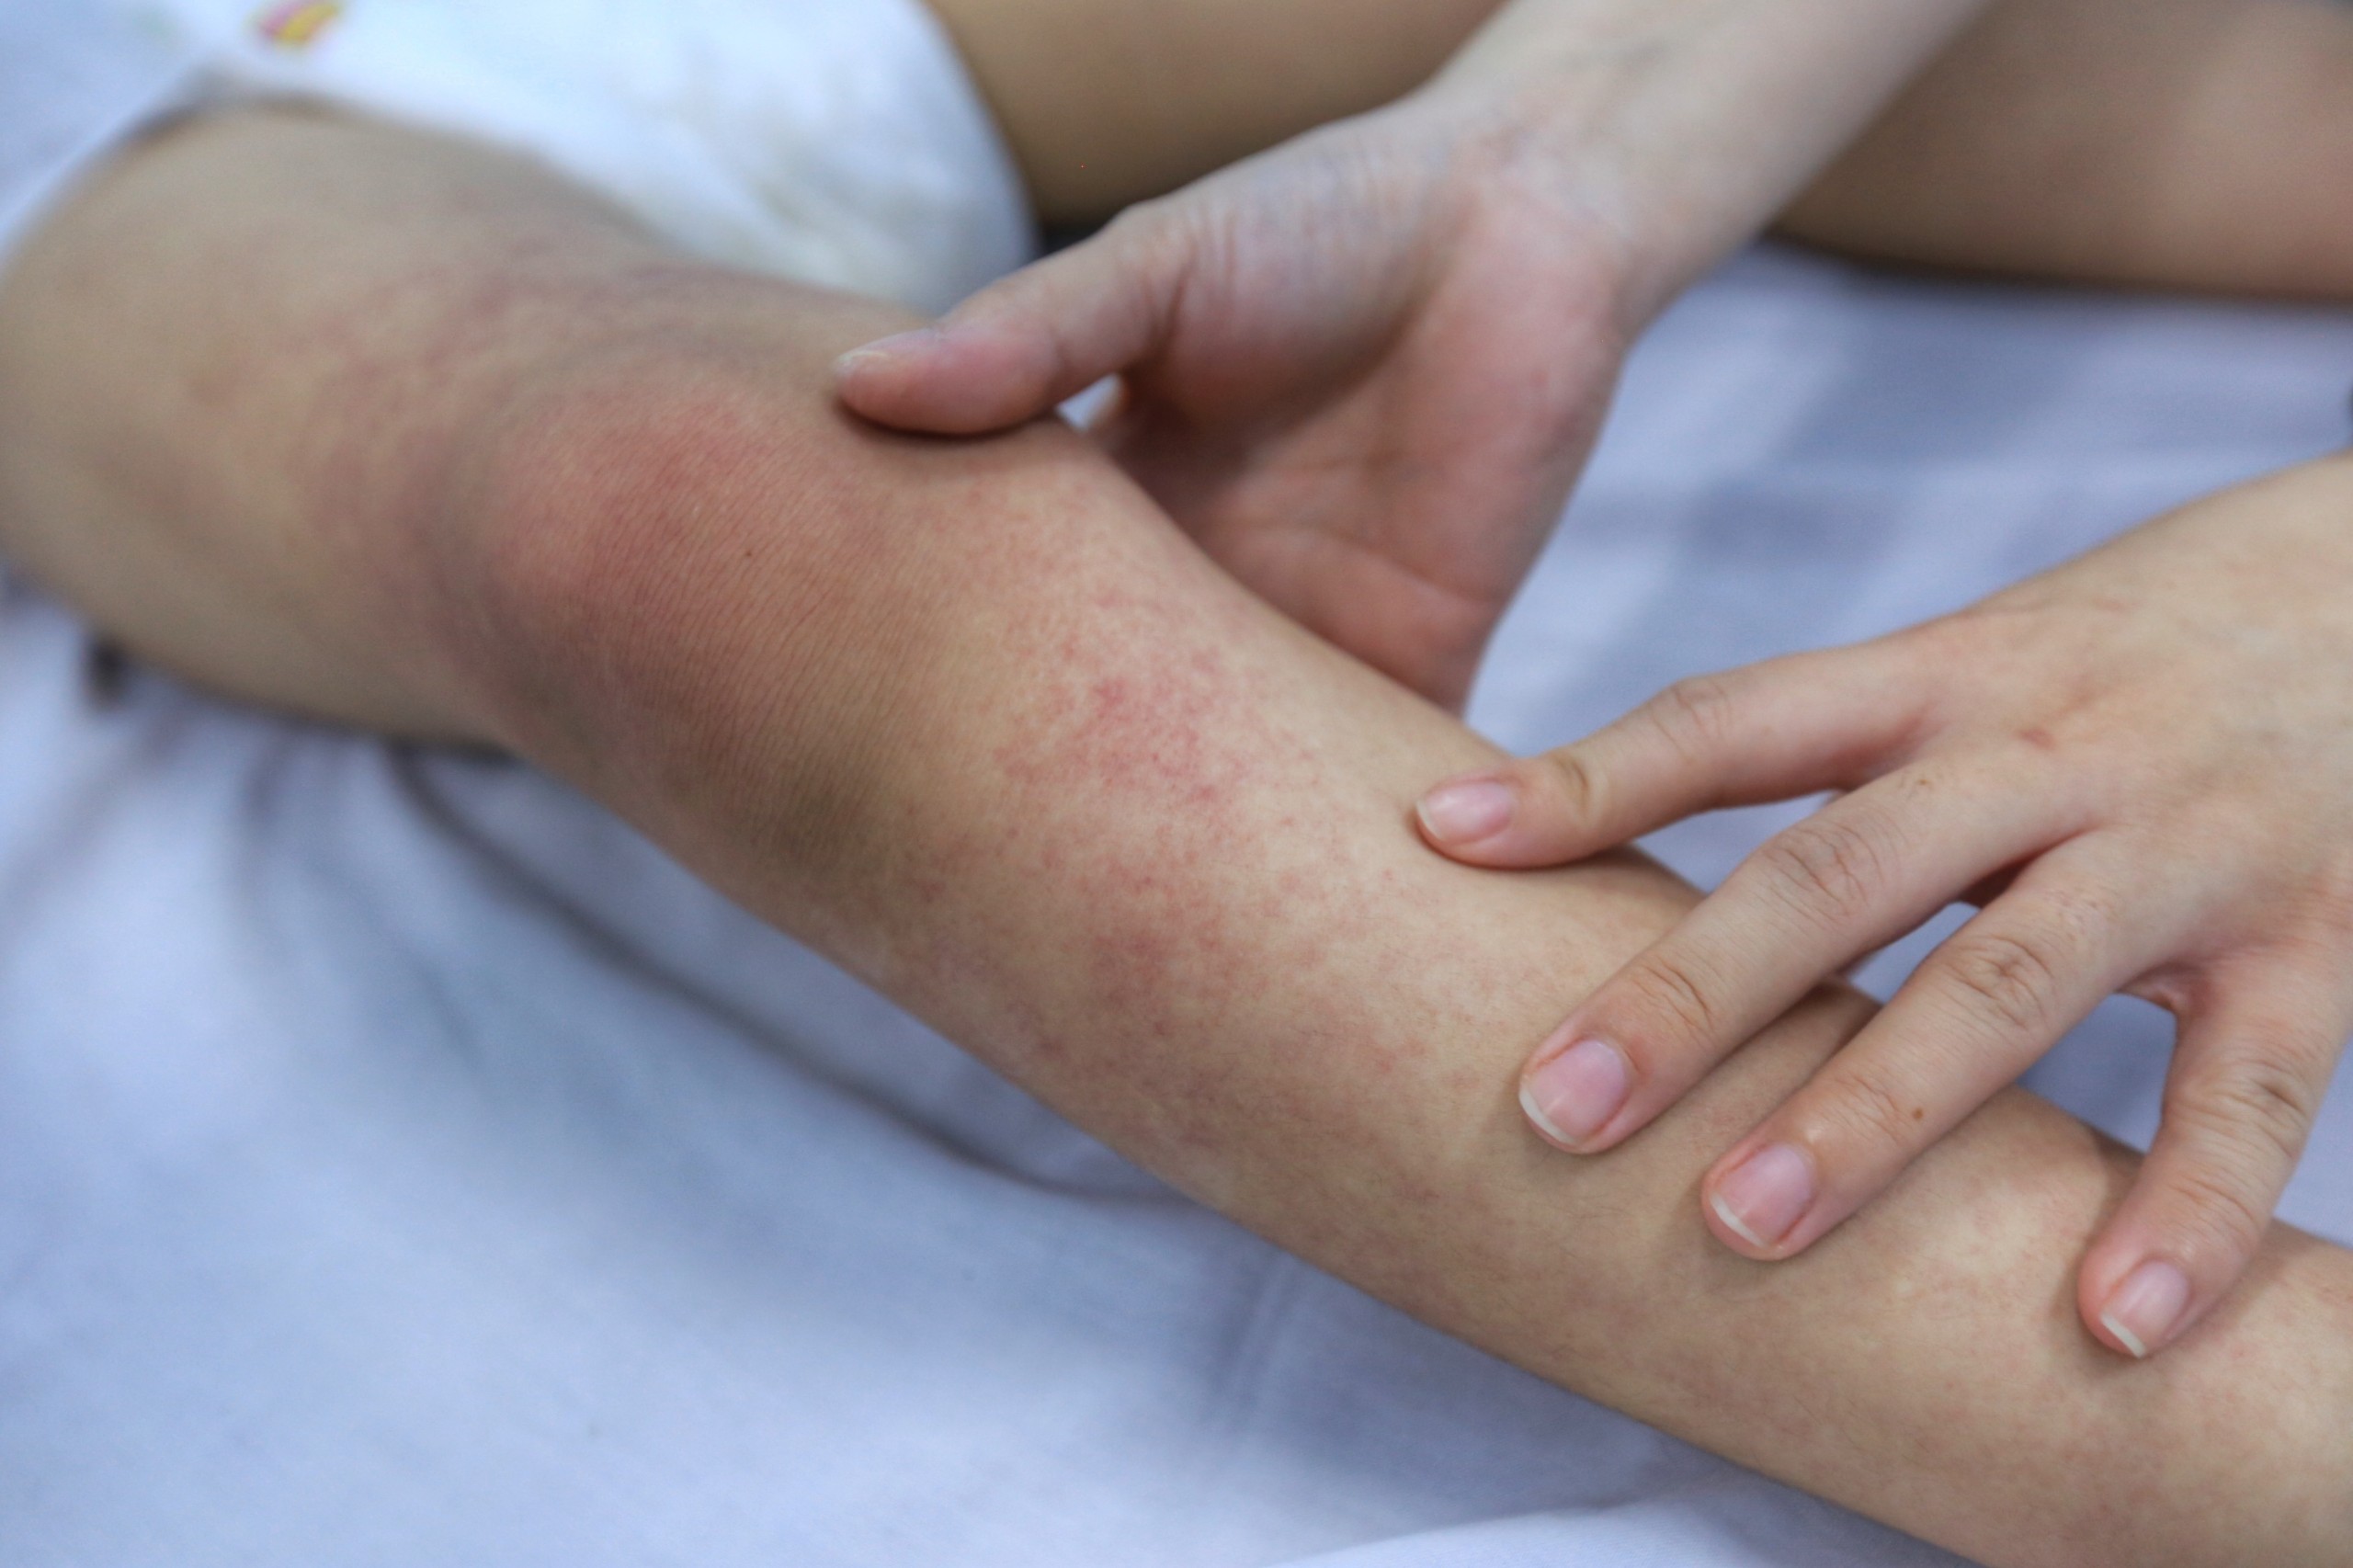 Hà Nội ghi nhận gần 10.000 ca sốt xuất huyết dù chưa đỉnh dịch